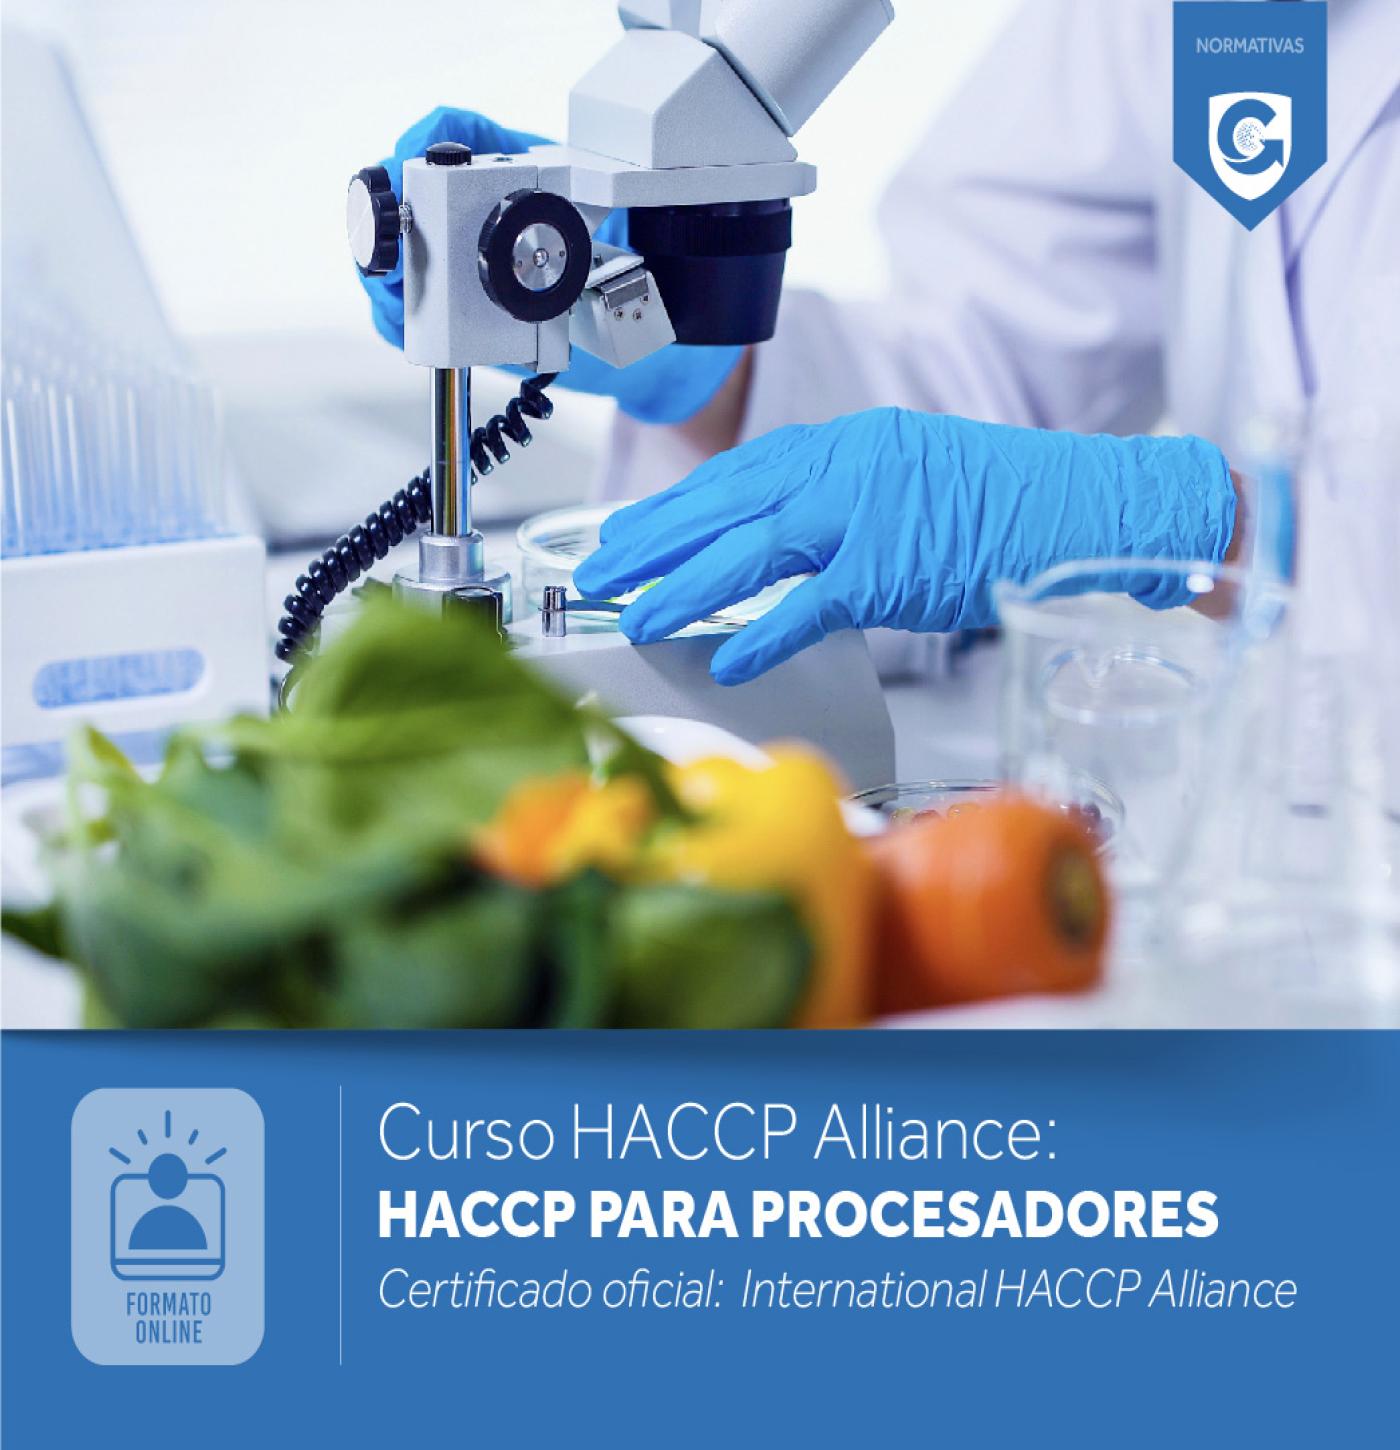 CURSO HACCP ALLIANCE: HACCP PARA PROCESADORES